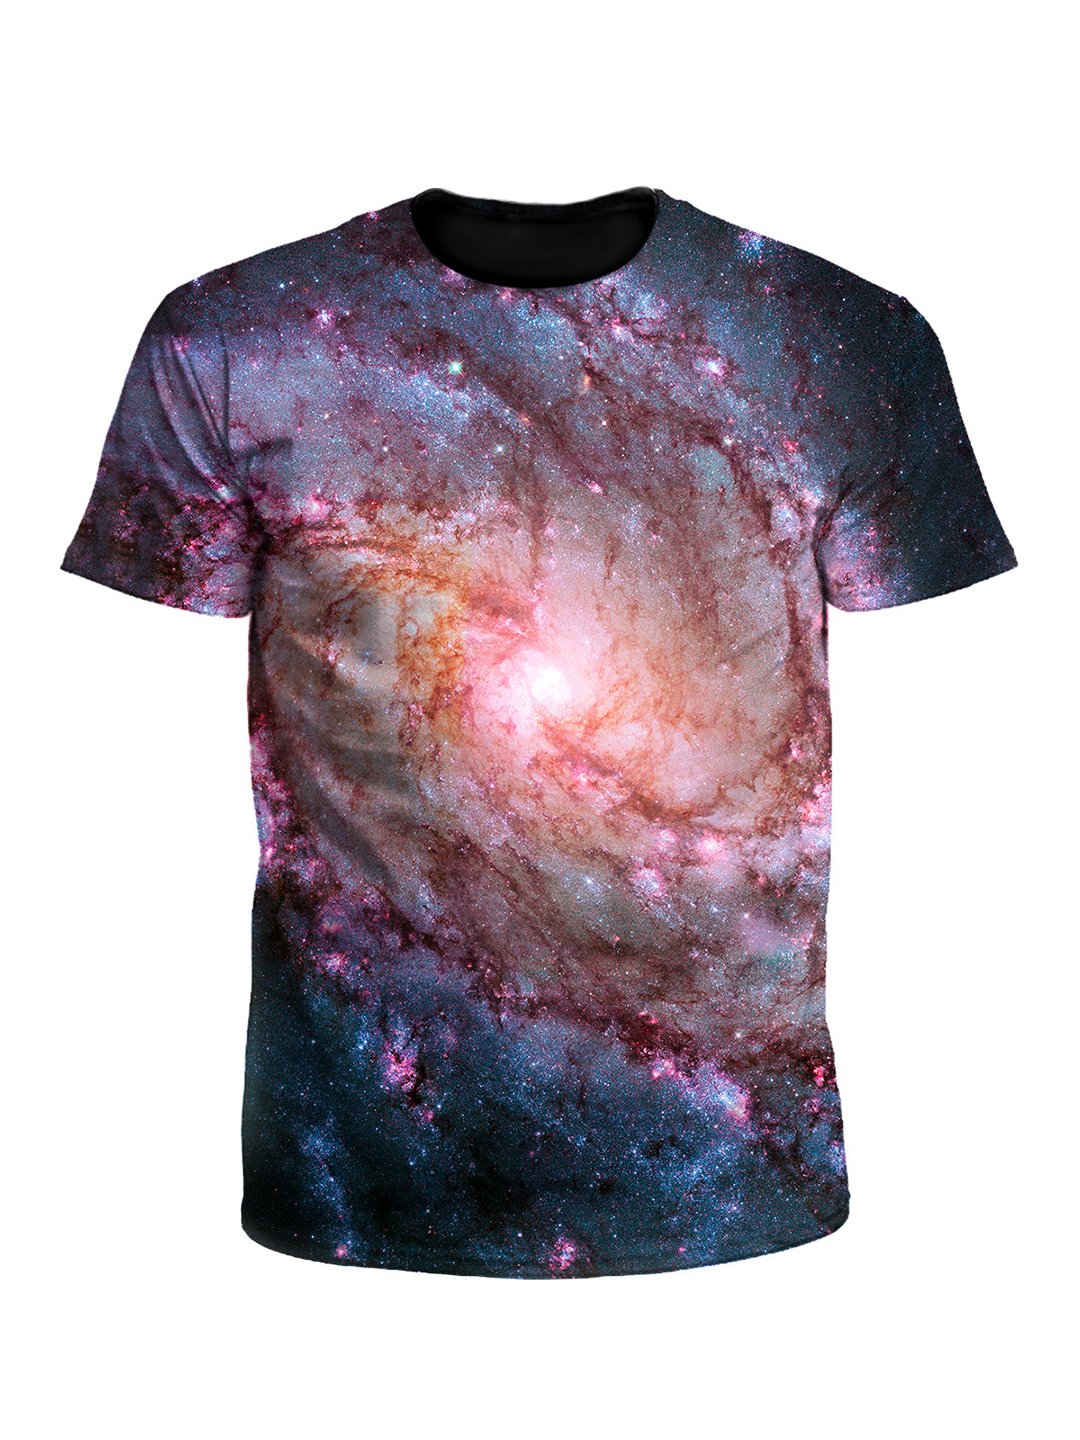 Twisted Skies Spiral Vortex Galaxy Unisex T-Shirt - Boogie Threads